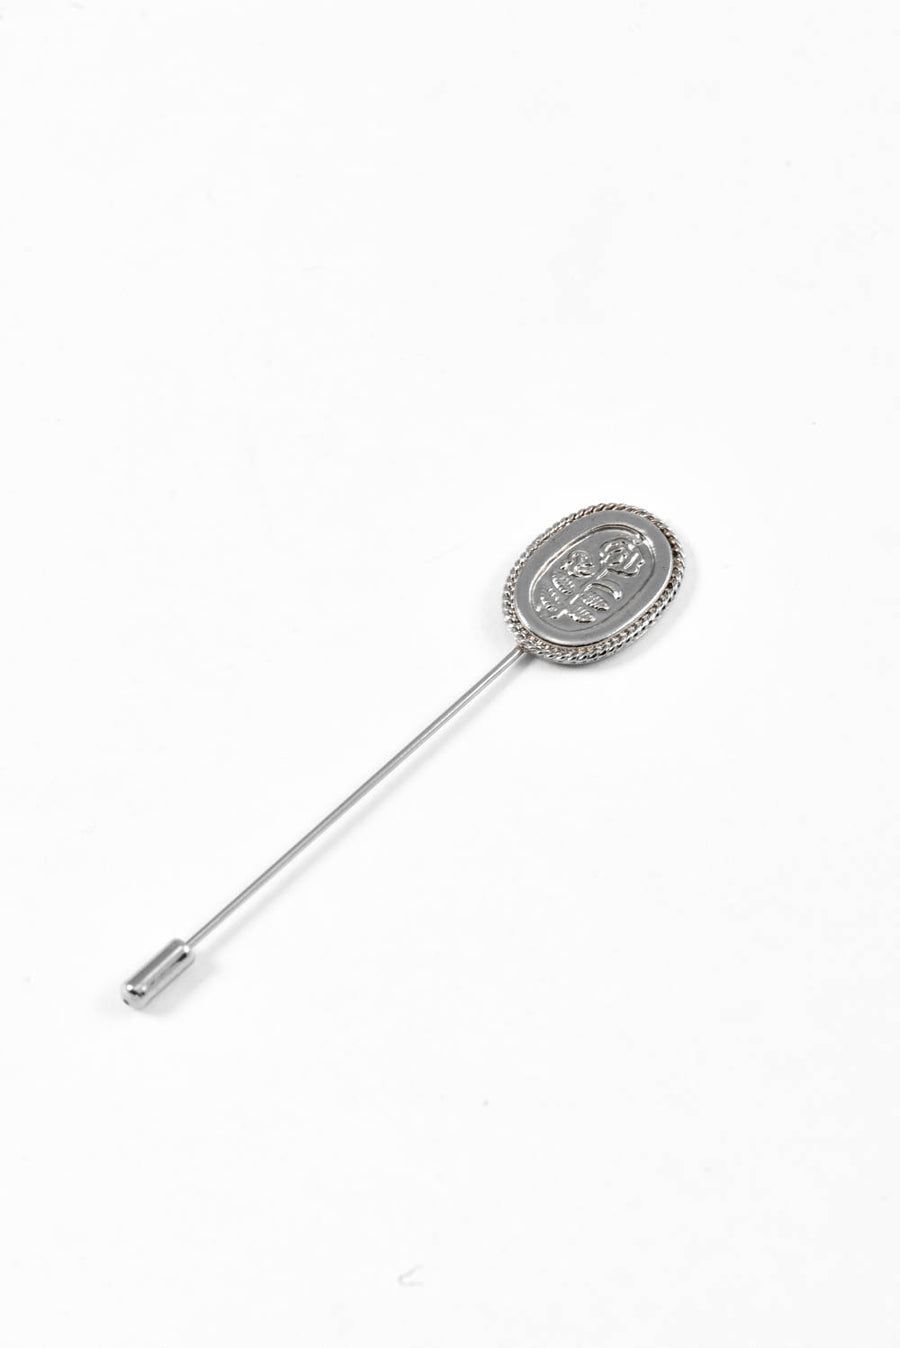 SubRosa Lapel Pin in Silver